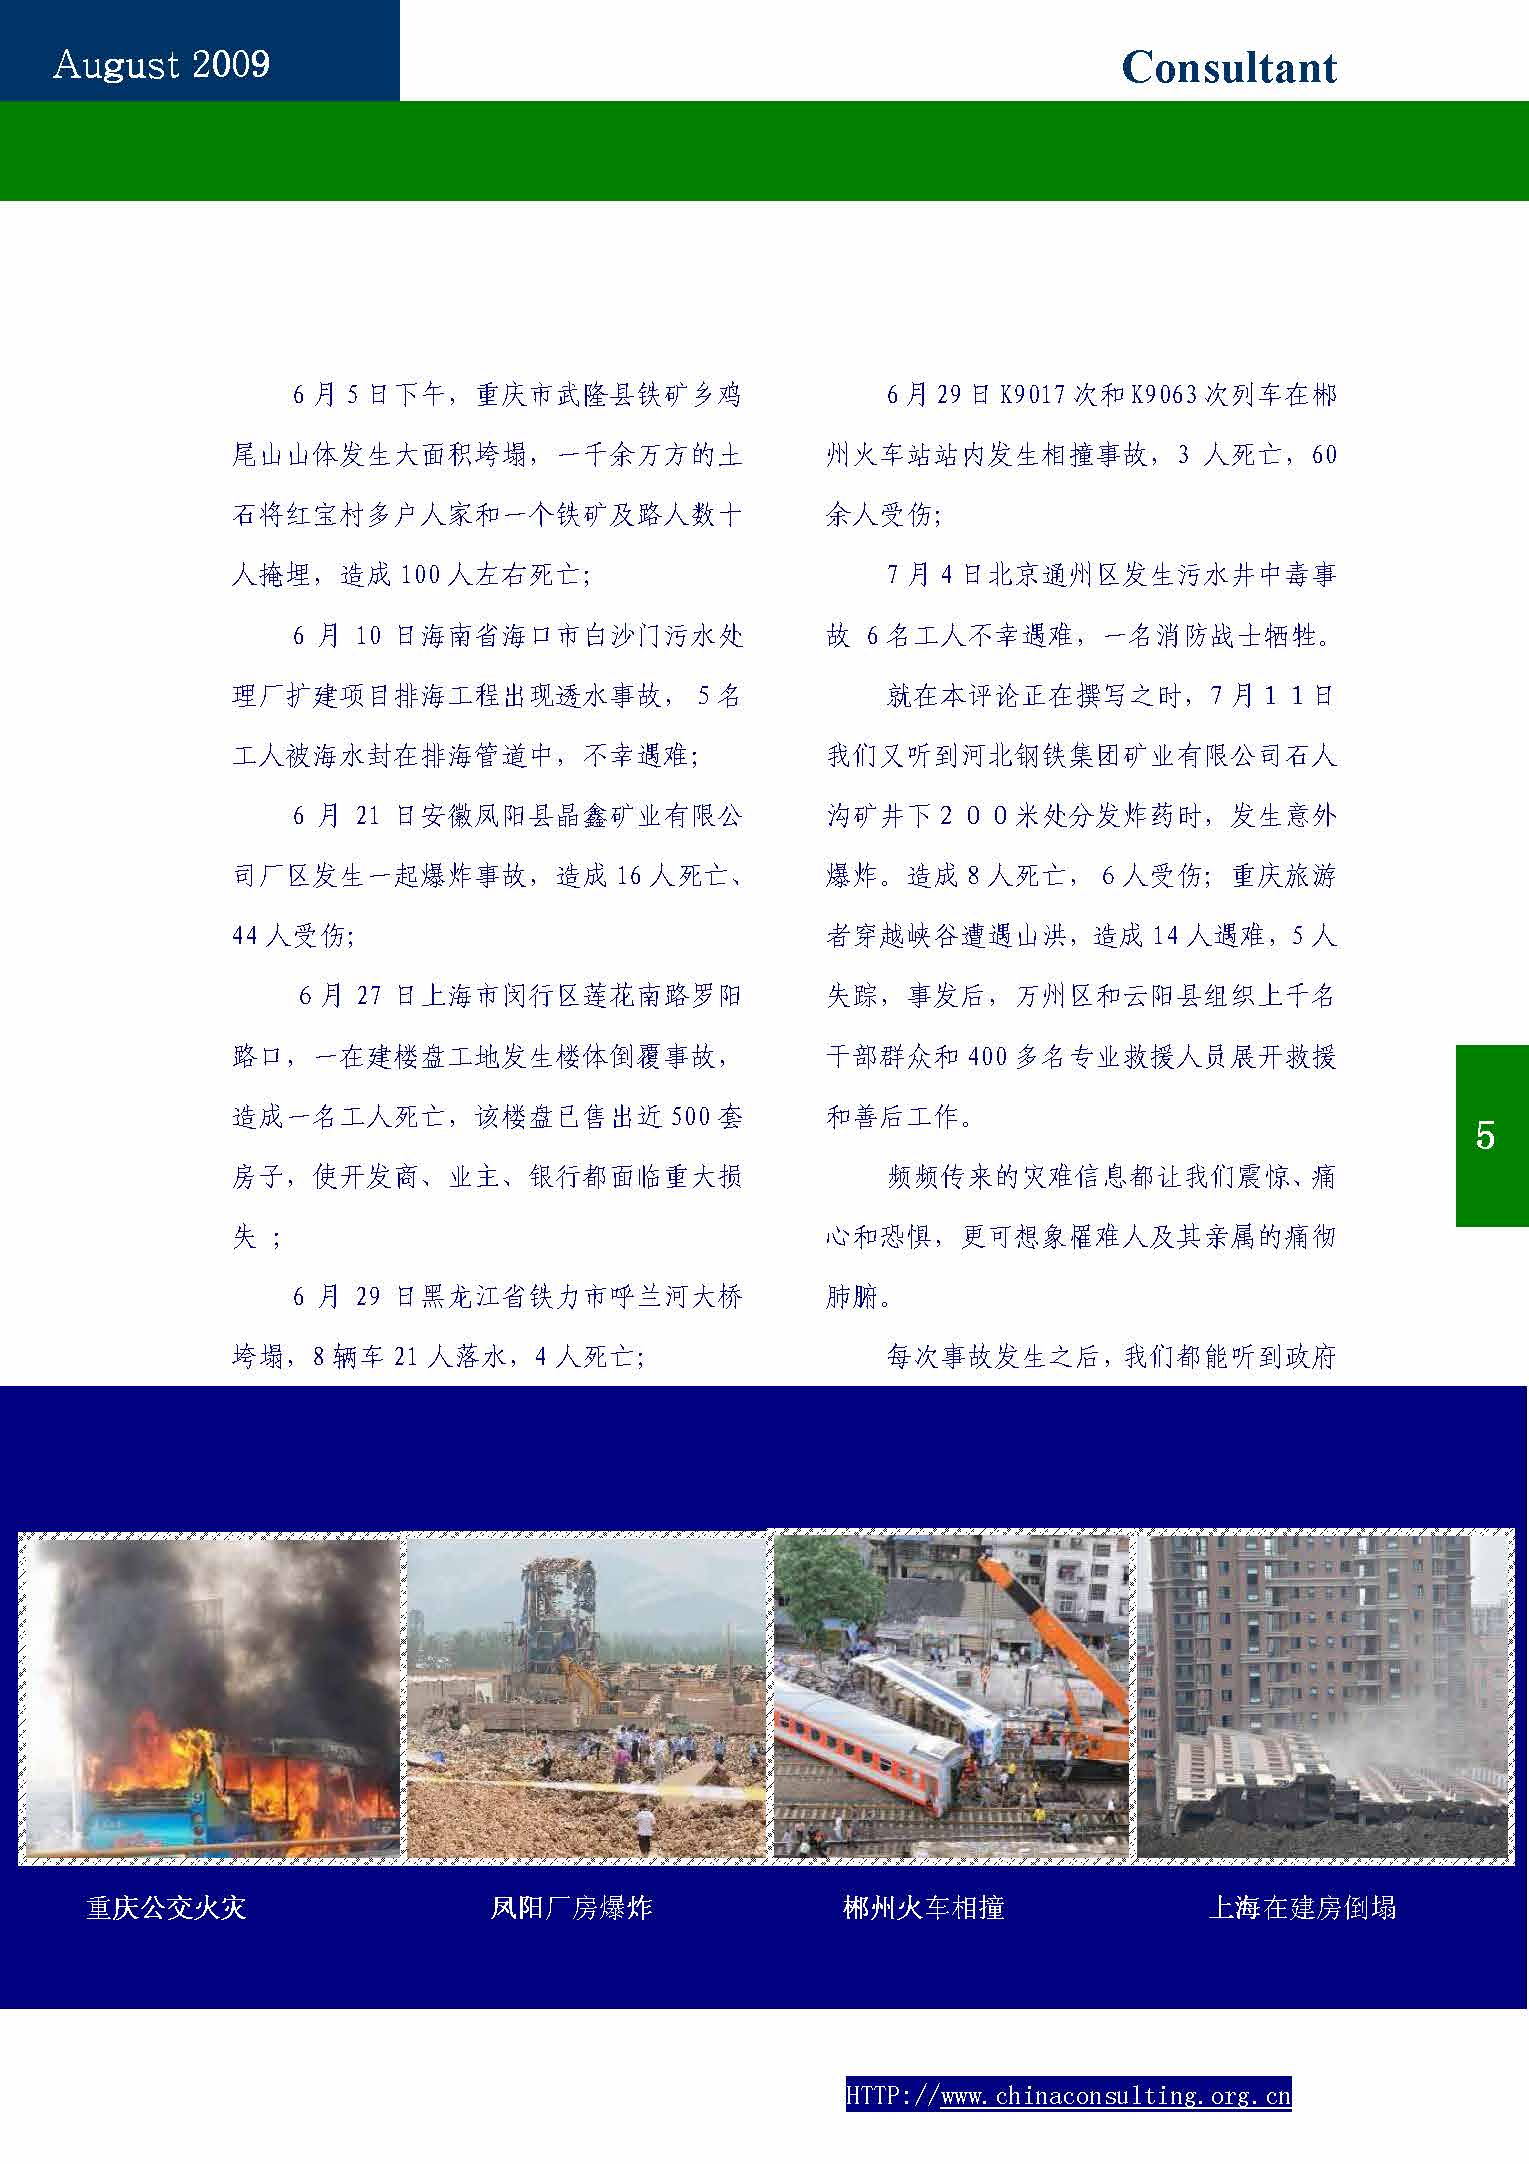 5中国科技咨询协会会刊(第五期)_页面_07.jpg